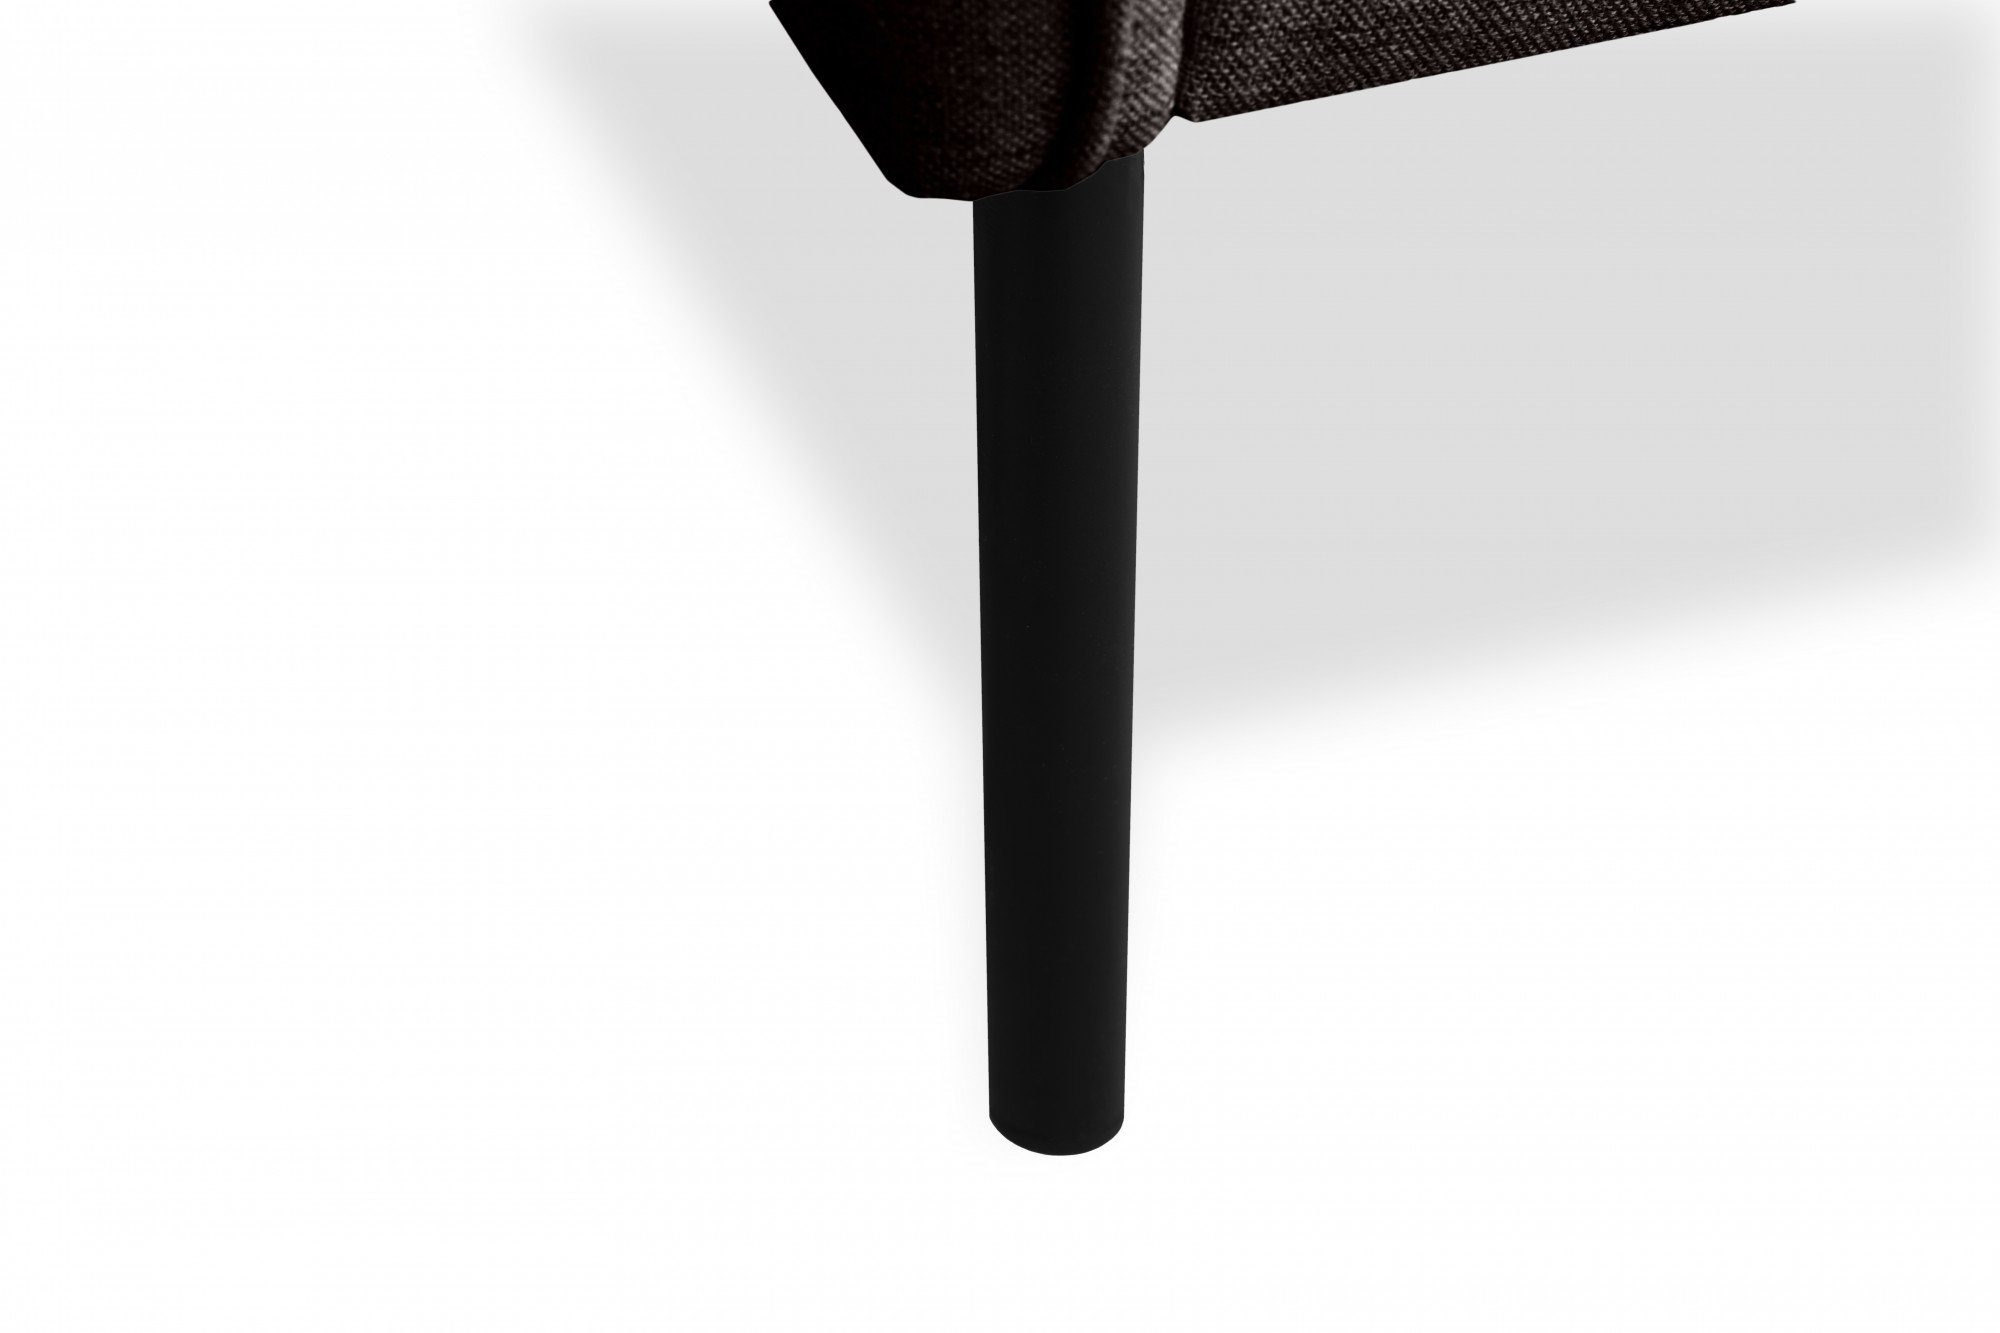 schlanken Sessel Design auf Metallfüßen Skalle, andas minimalistisches